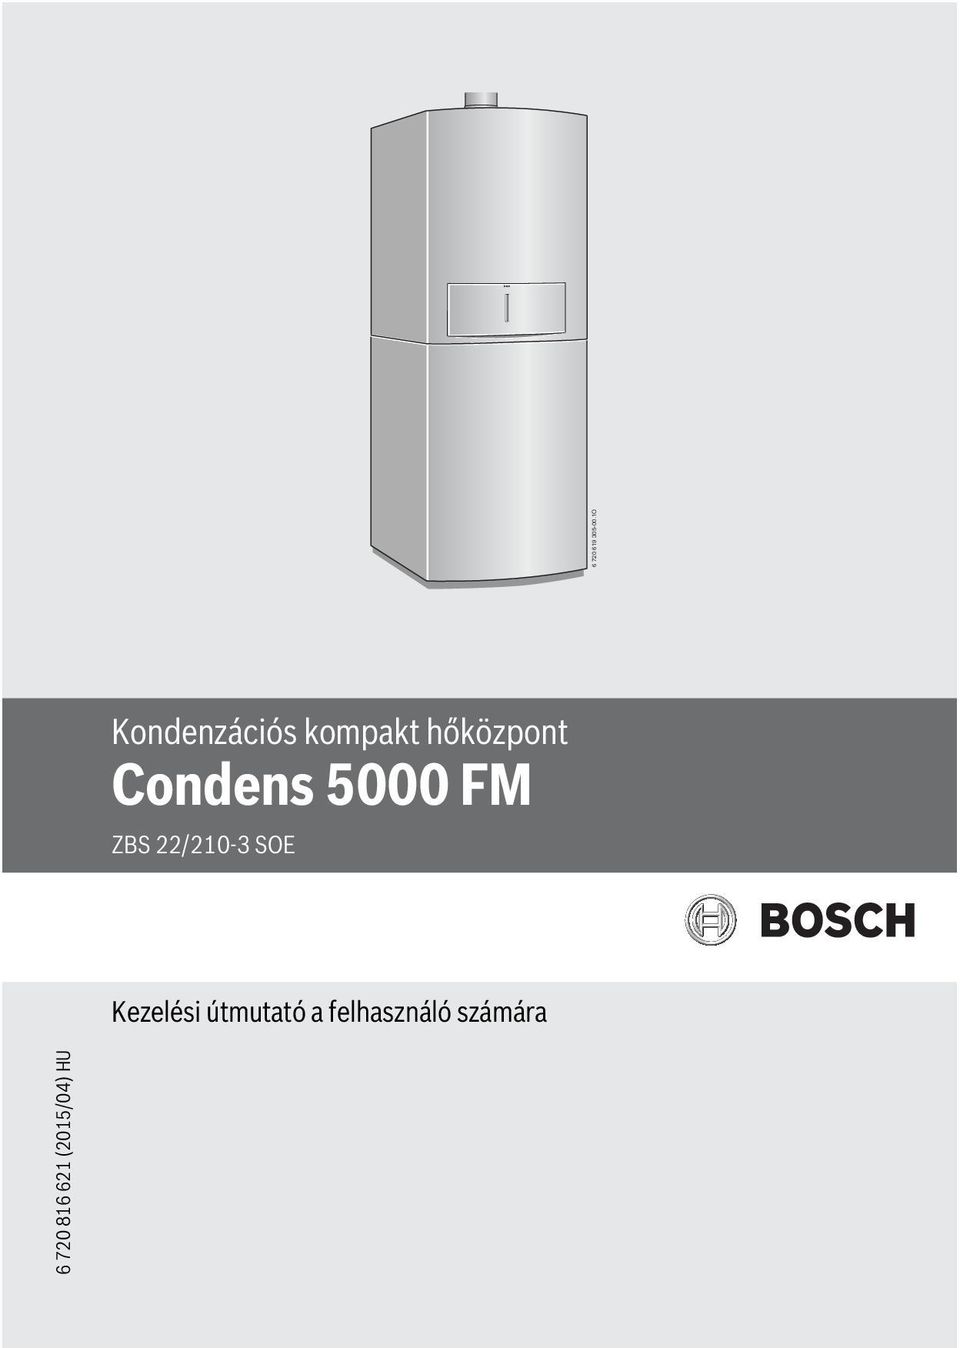 Condens 5000 FM ZBS /0-3 SOE